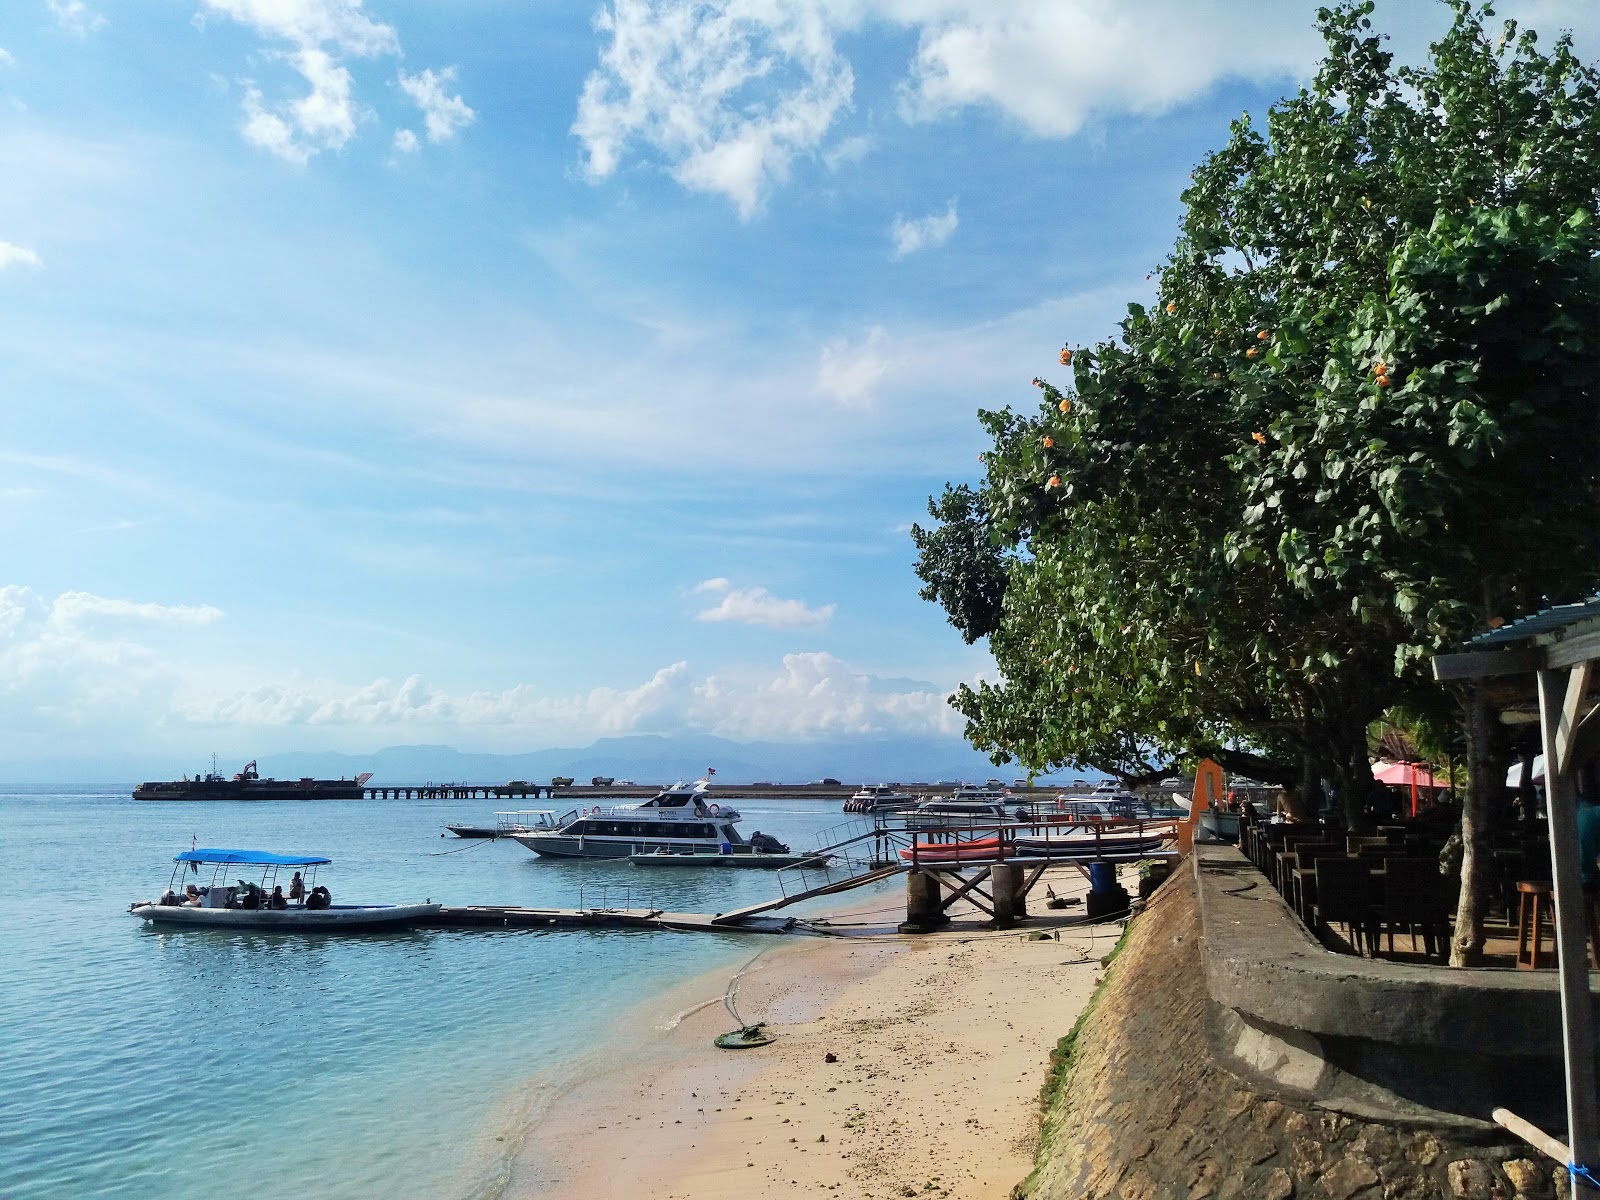 Fotografie cu Toya Paken Beach - locul popular printre cunoscătorii de relaxare